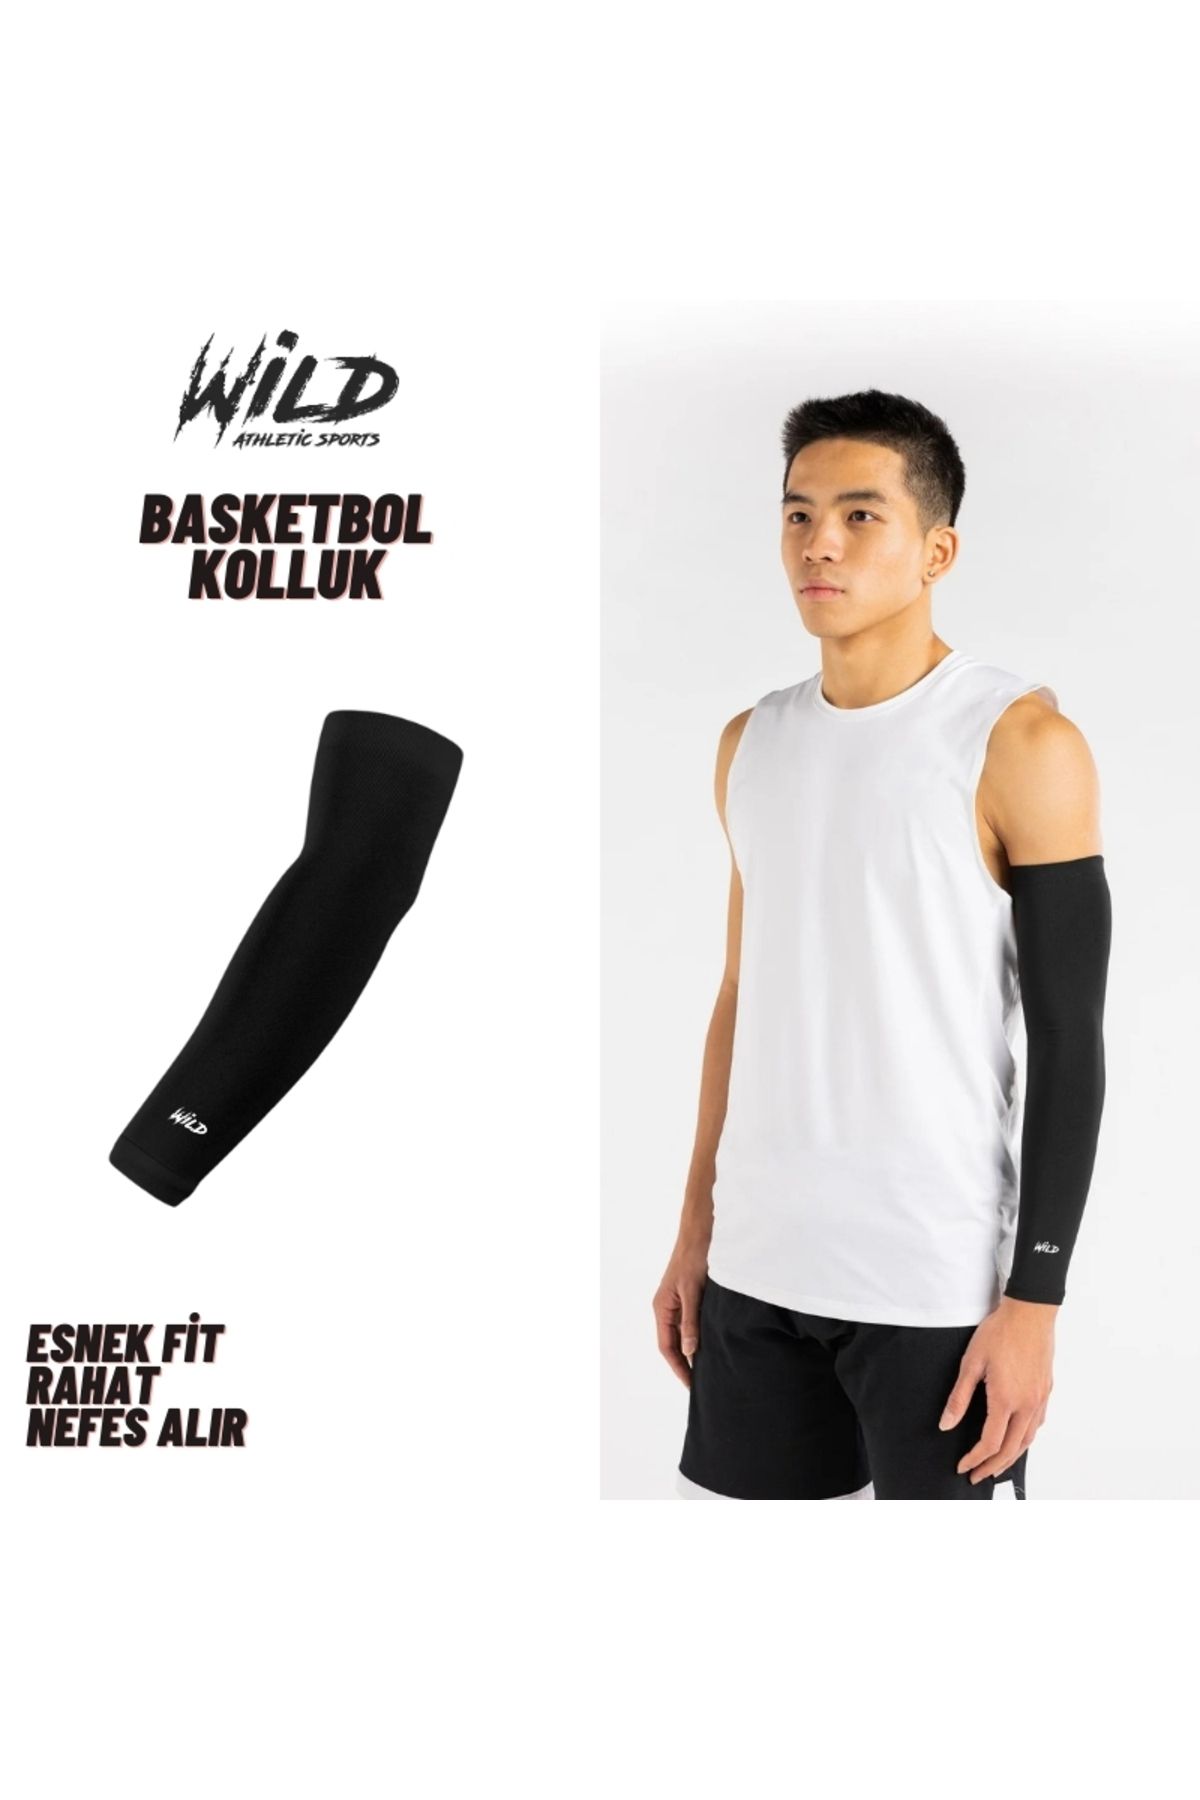 Wild Athletic Sports Basketbol Korumasız Spor Kolluk